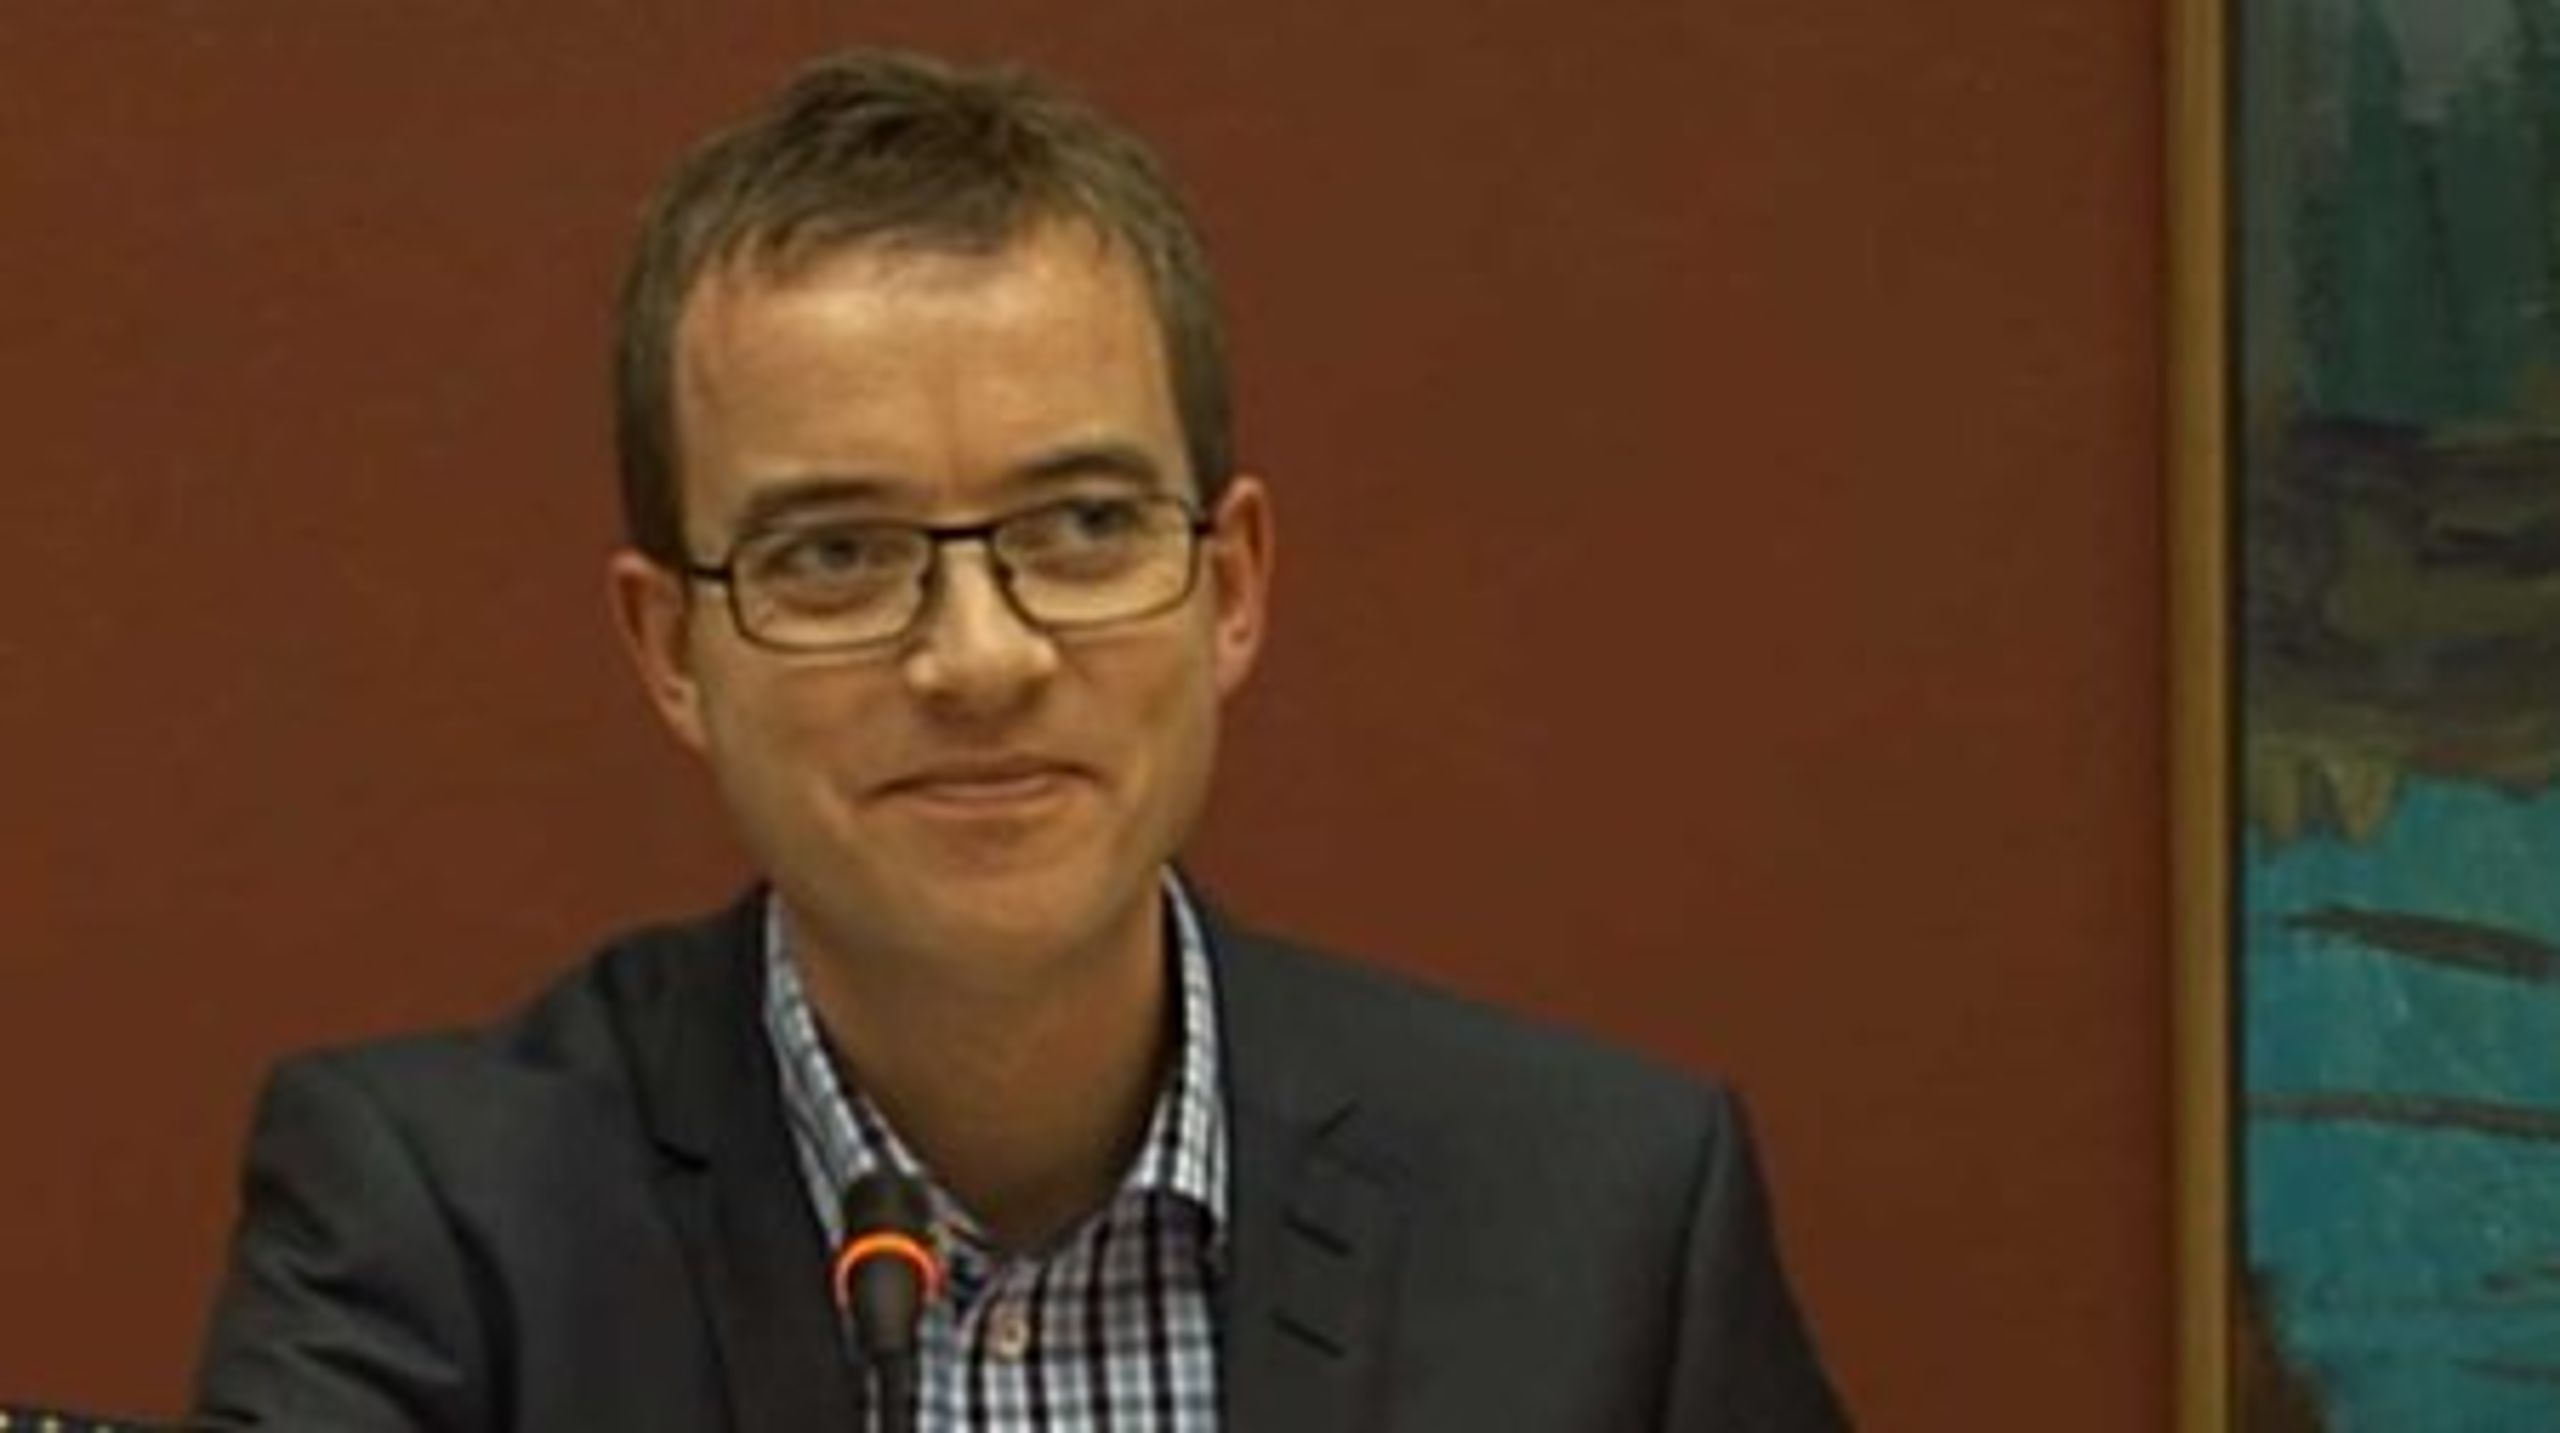 Venstres forskningsordfører, Esben Lunde Larsen, har haft travlt med at skyde regeringens forslag om at ændre optagesystemet ned. Nu åbner han en mulighed på klem for, at Venstre vil justere kvote 2-optaget. <br>